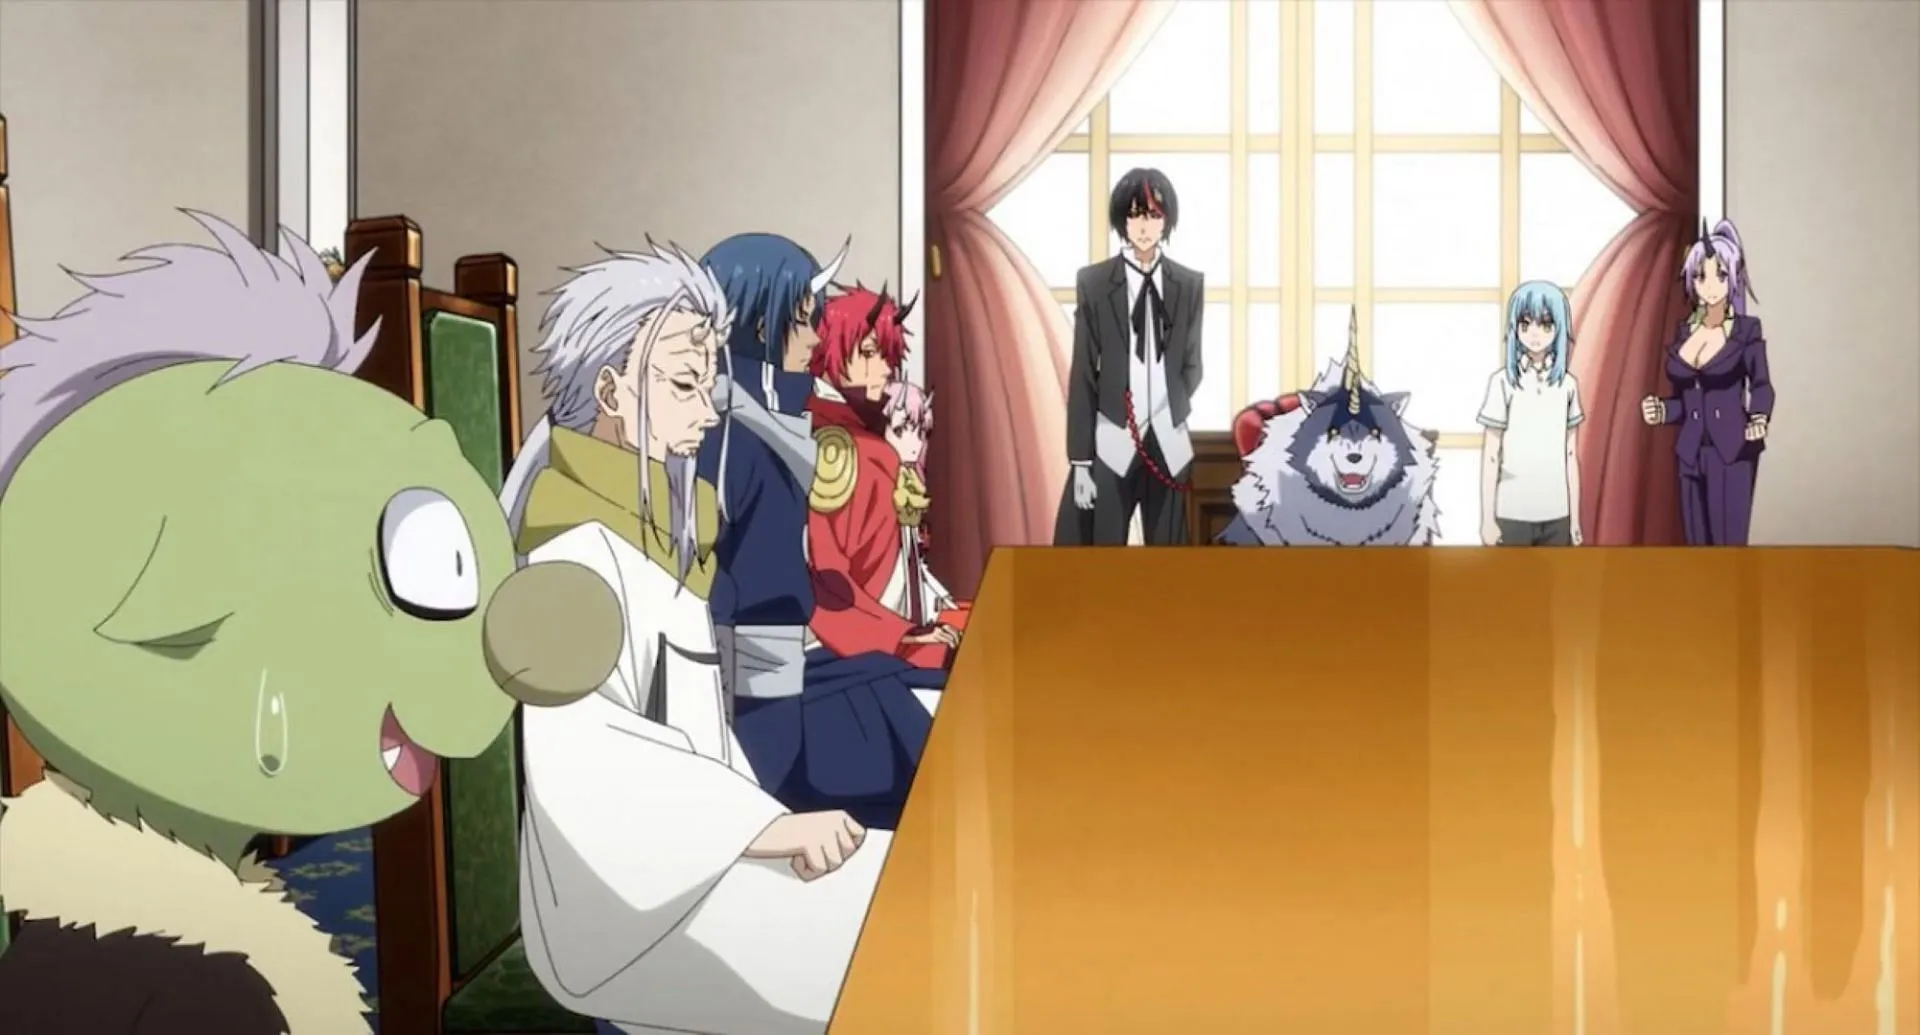 Rimuru tient une réunion, comme on le voit dans l'épisode (Image via 8Bit)